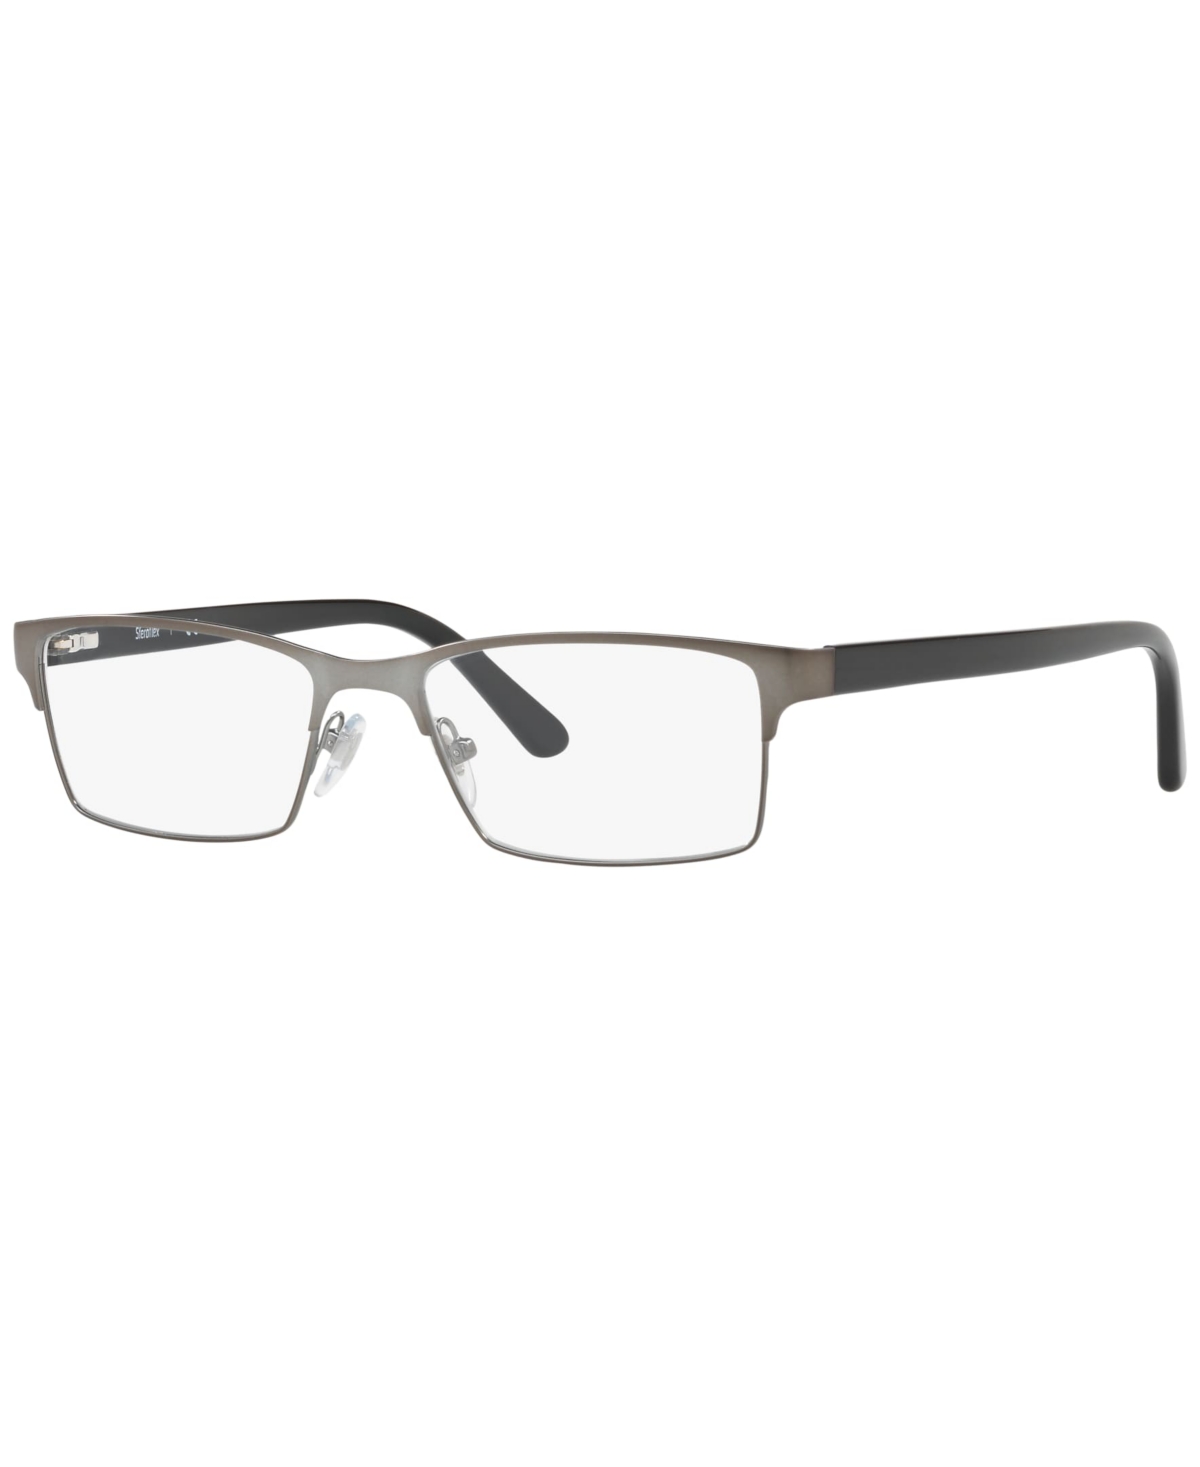 Steroflex Men's Eyeglasses, SF2289 - Matte Gunmetal